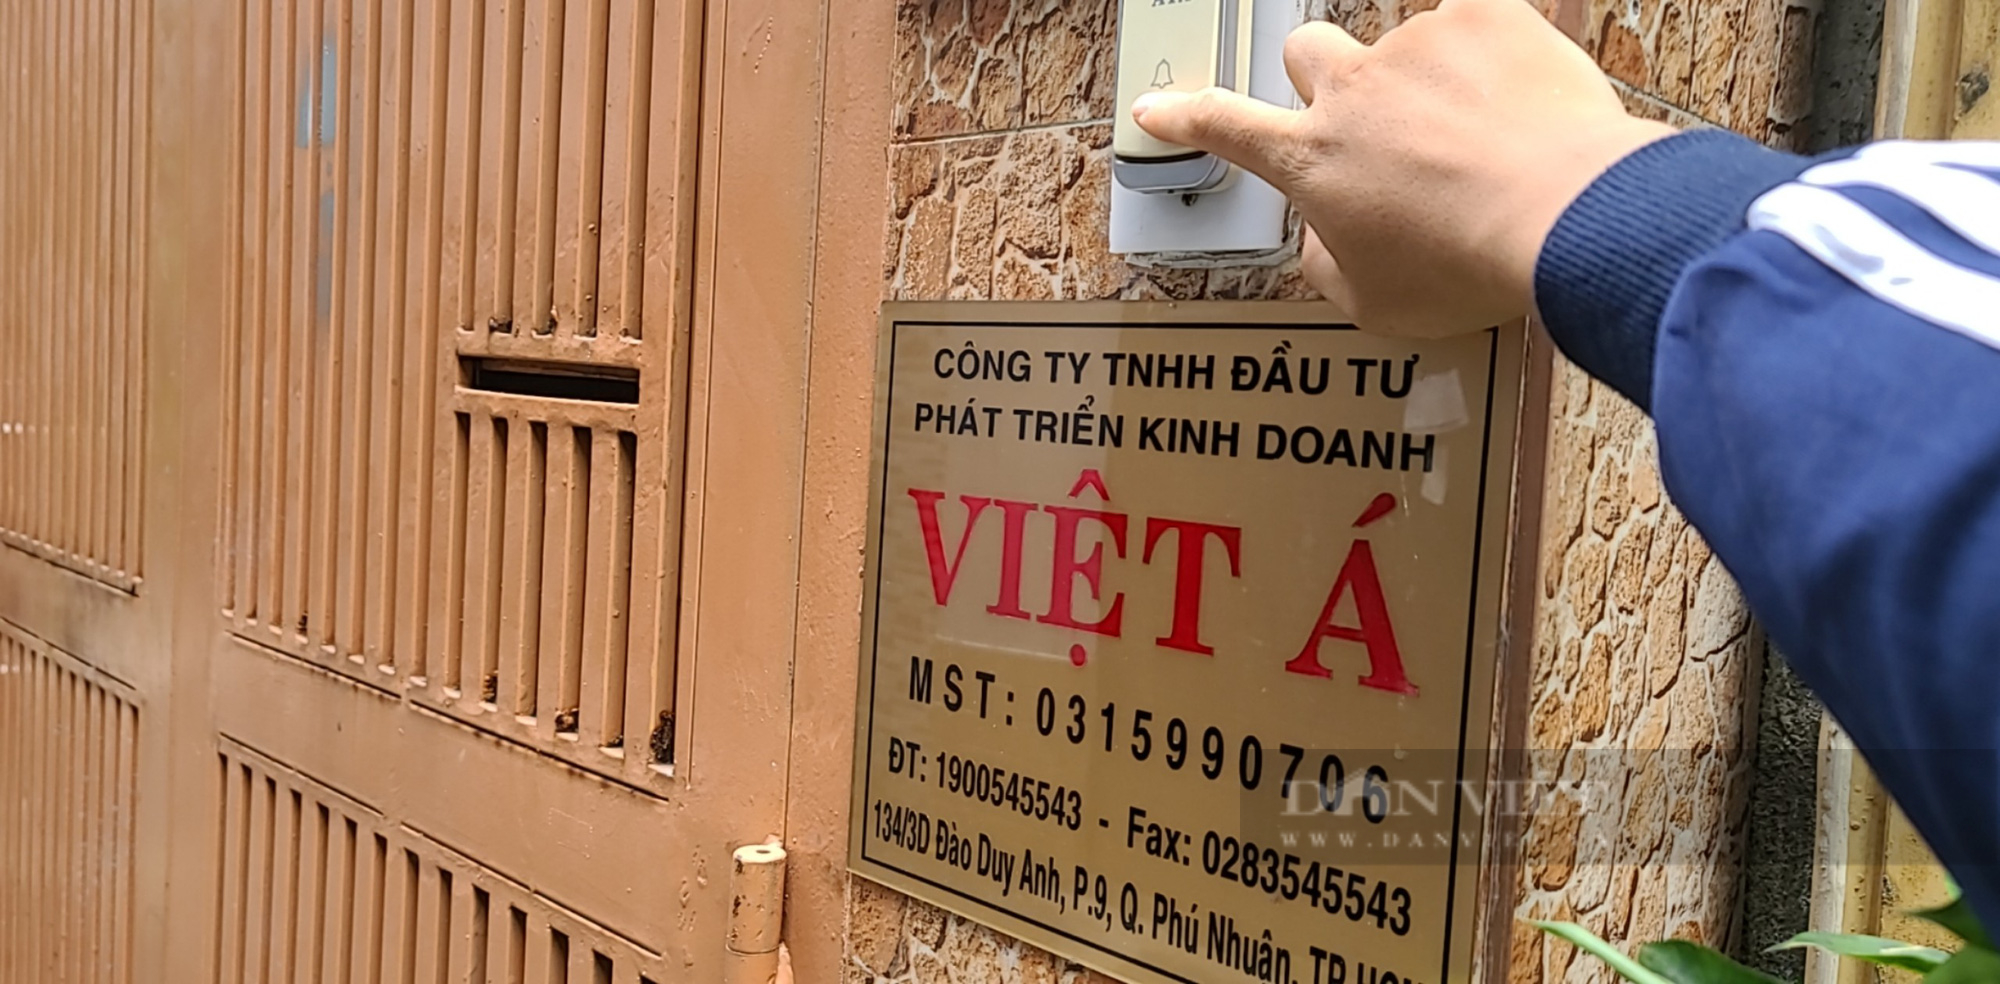 Người bên trong trụ sở Công ty Việt Á: “Không hay biết gì” - Ảnh 2.